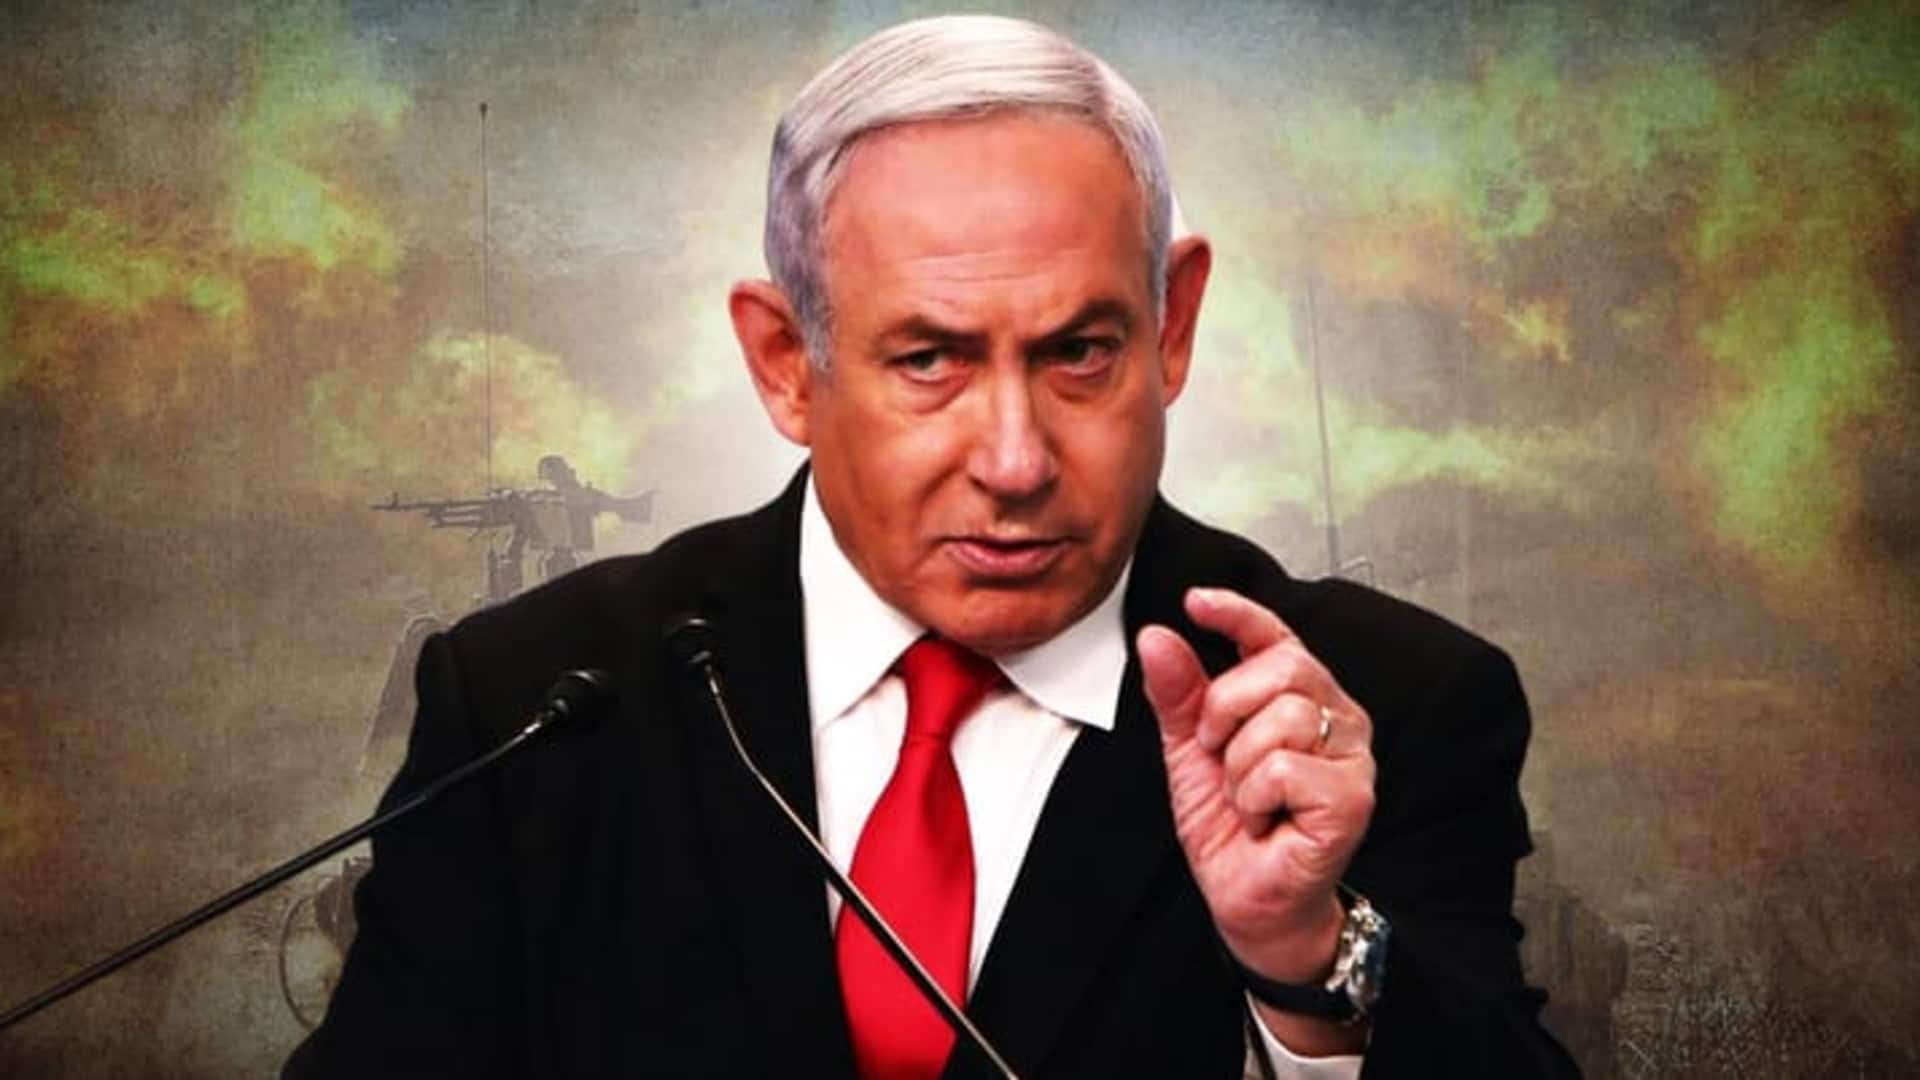 इजरायल UN महासचिव पर भड़का, हमास का समर्थक और विश्व शांति के लिए खतरा बताया